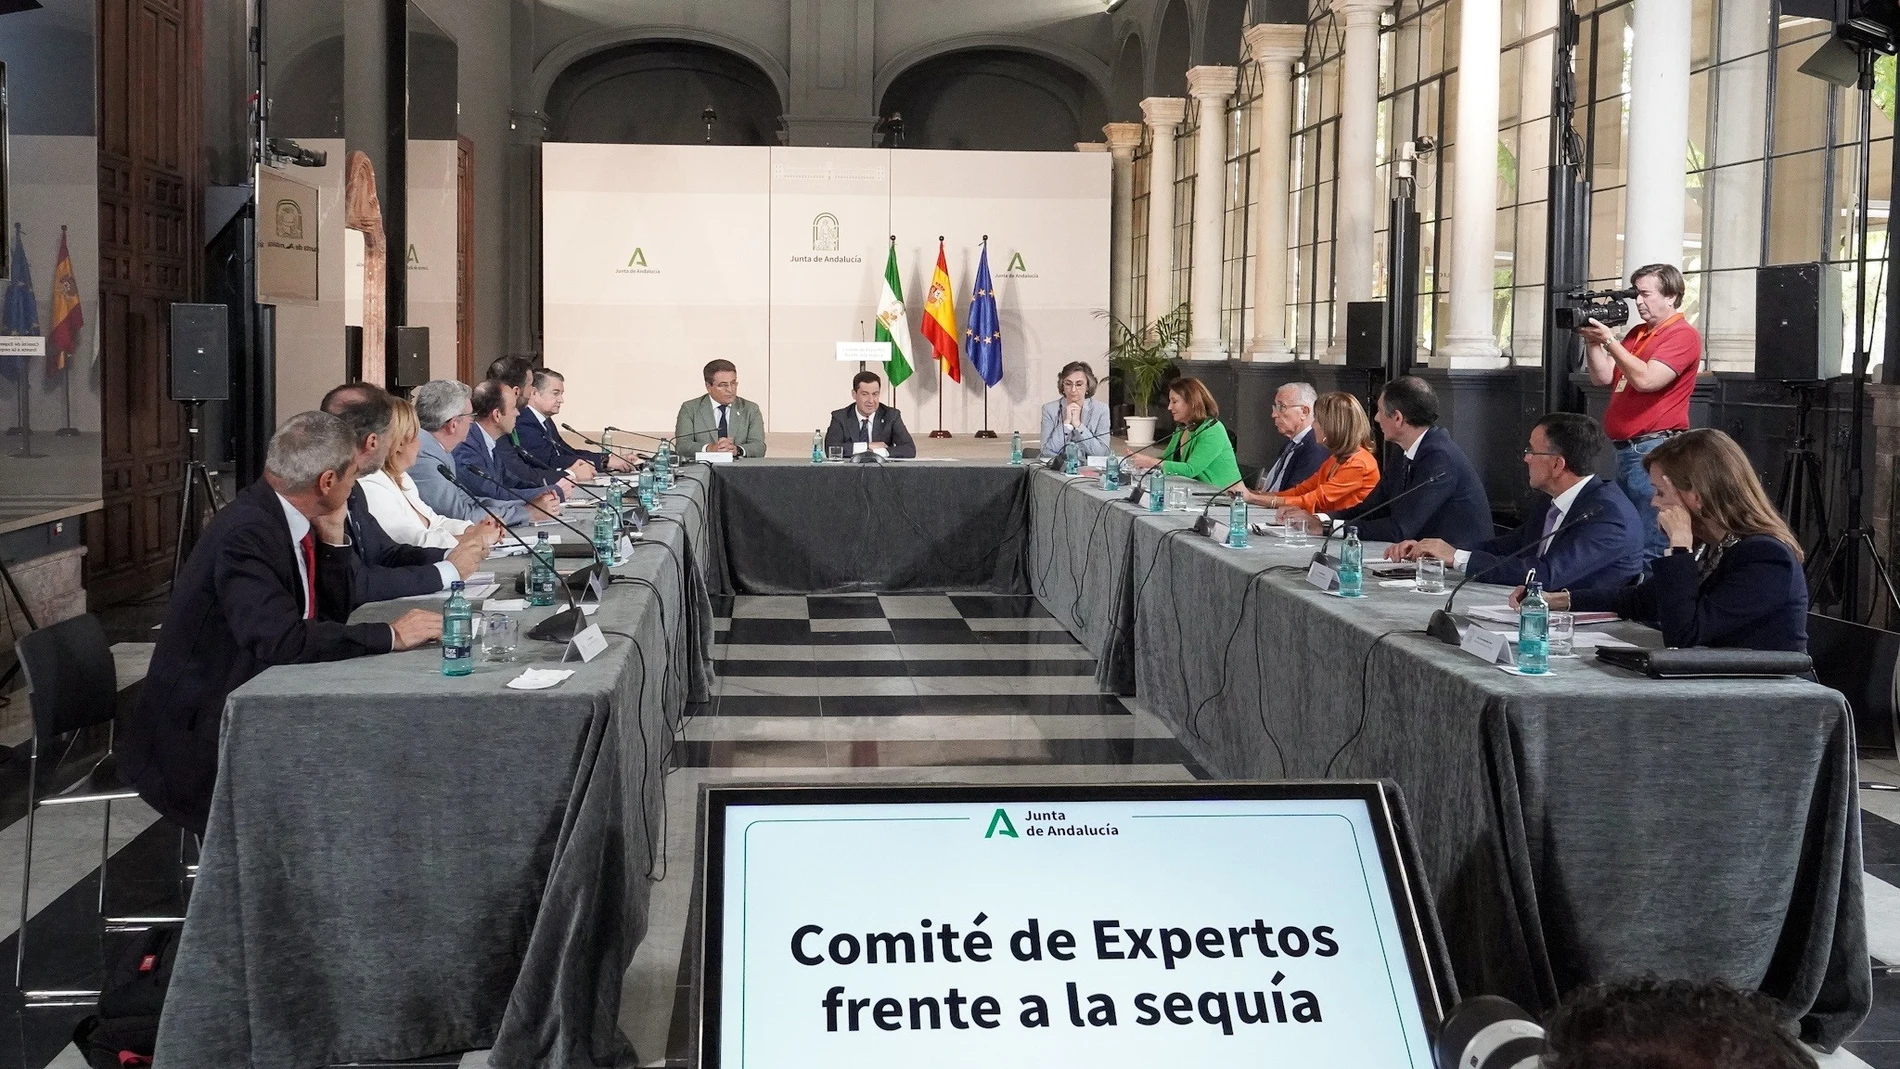 El presidente de la Junta de Andalucía, Juanma Moreno, preside este jueves, en el Palacio de San Telmo de Sevilla, la reunión constitutiva del Comité de expertos frente a la sequía. FRANCISCO J. OLMO-EUROPA PRESS